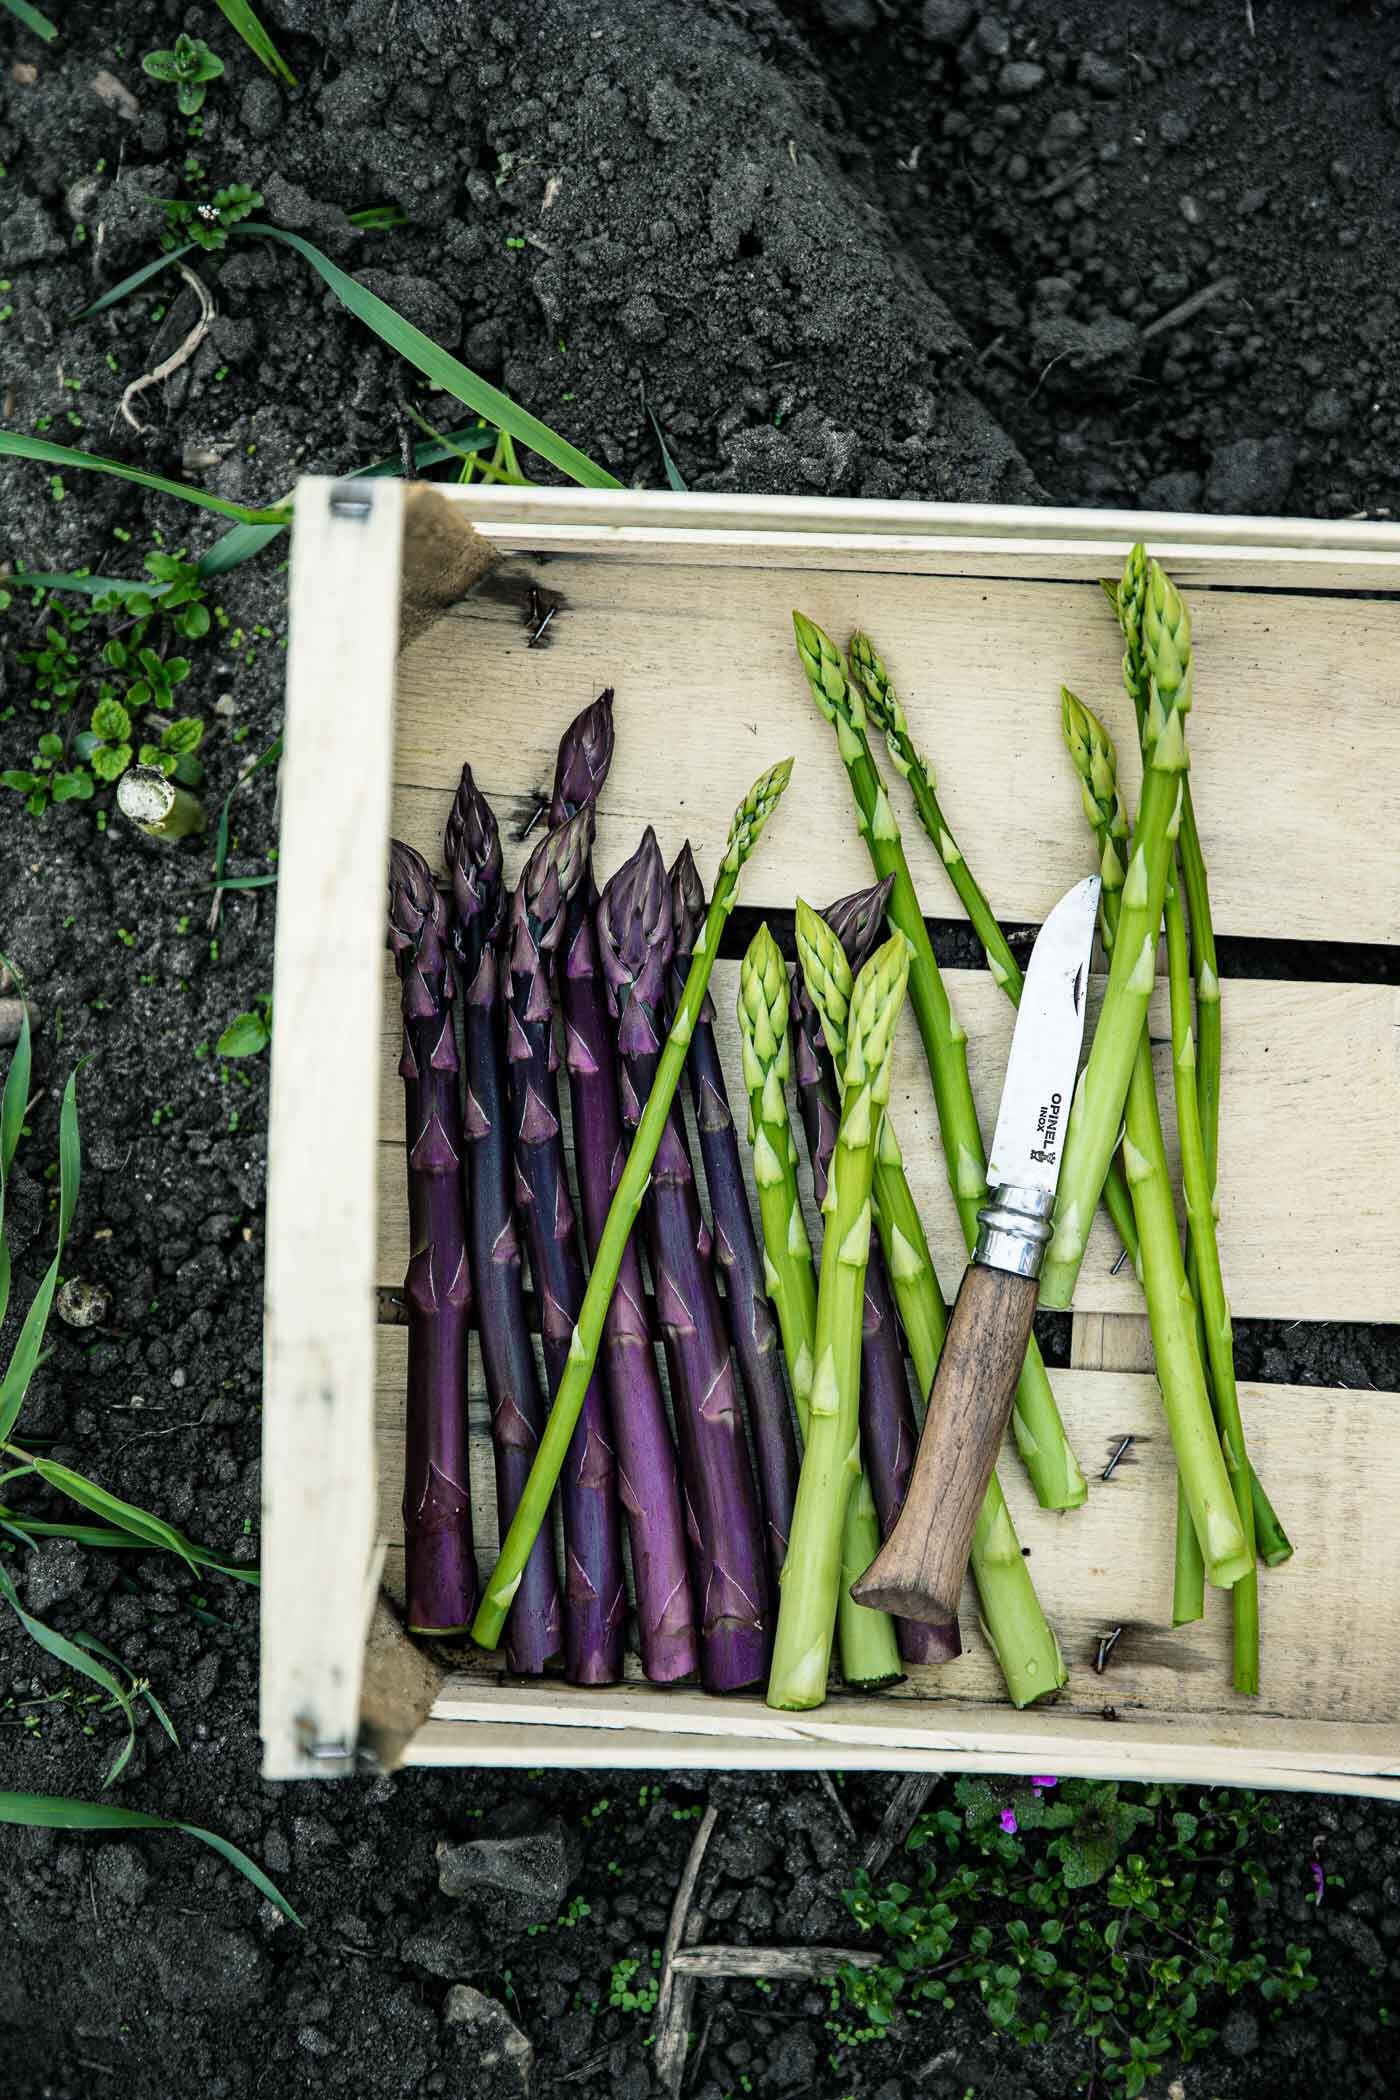 spargelernte-gruener-violetter-spargel-reportage-veggielicious-food-fotografie-91-dt-hoch.jpg